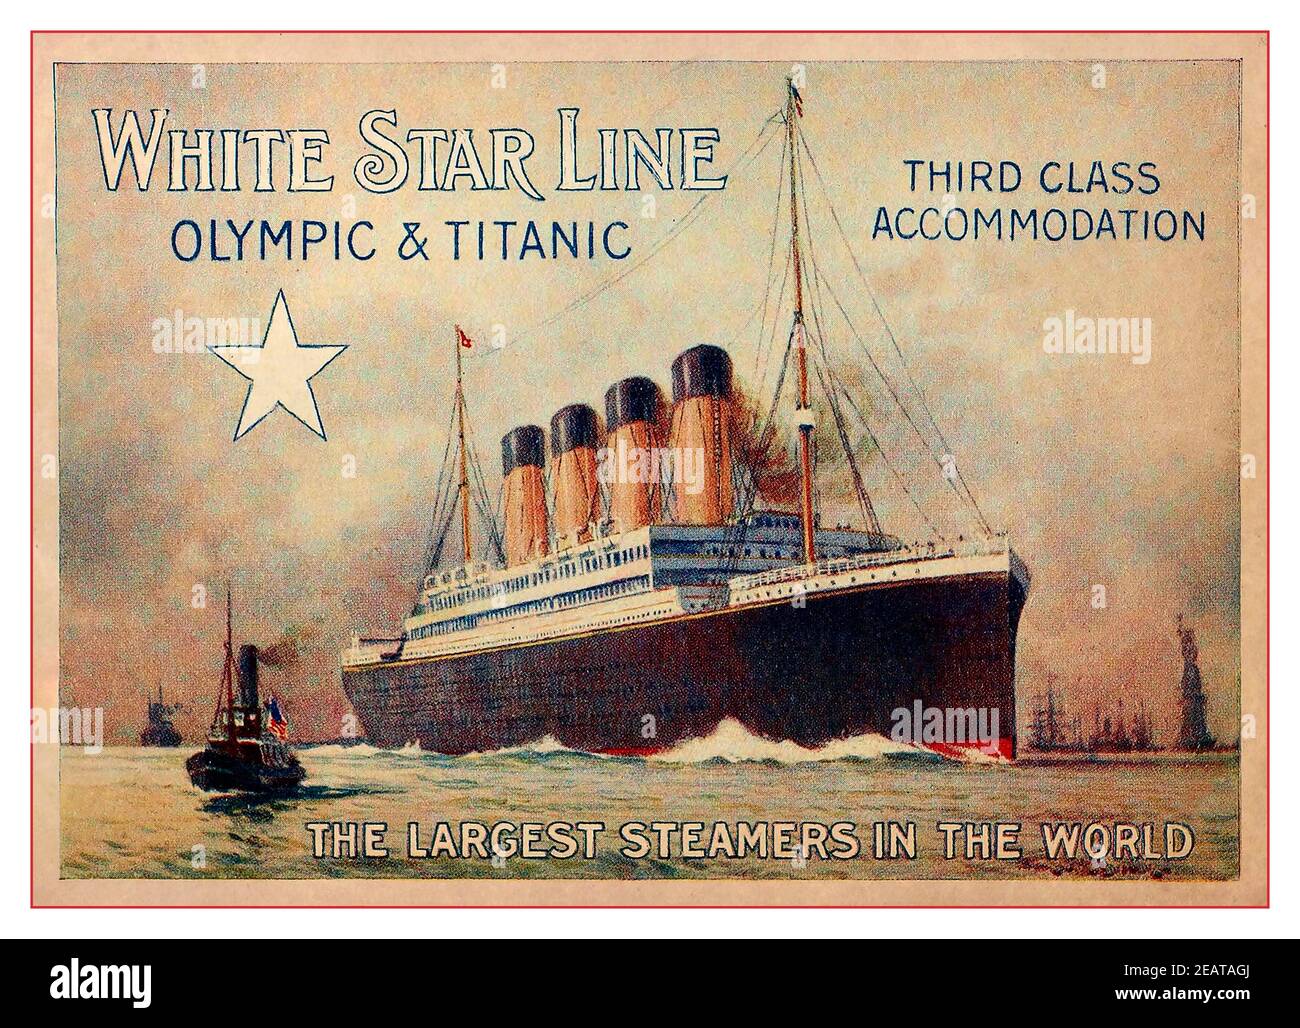 TITANIC & OLYMPIC 1900 Brochure Publicité couleur page par blanc Star Line offrant un hébergement de troisième classe dans les plus grands Steamers Dans le monde 1910 Banque D'Images